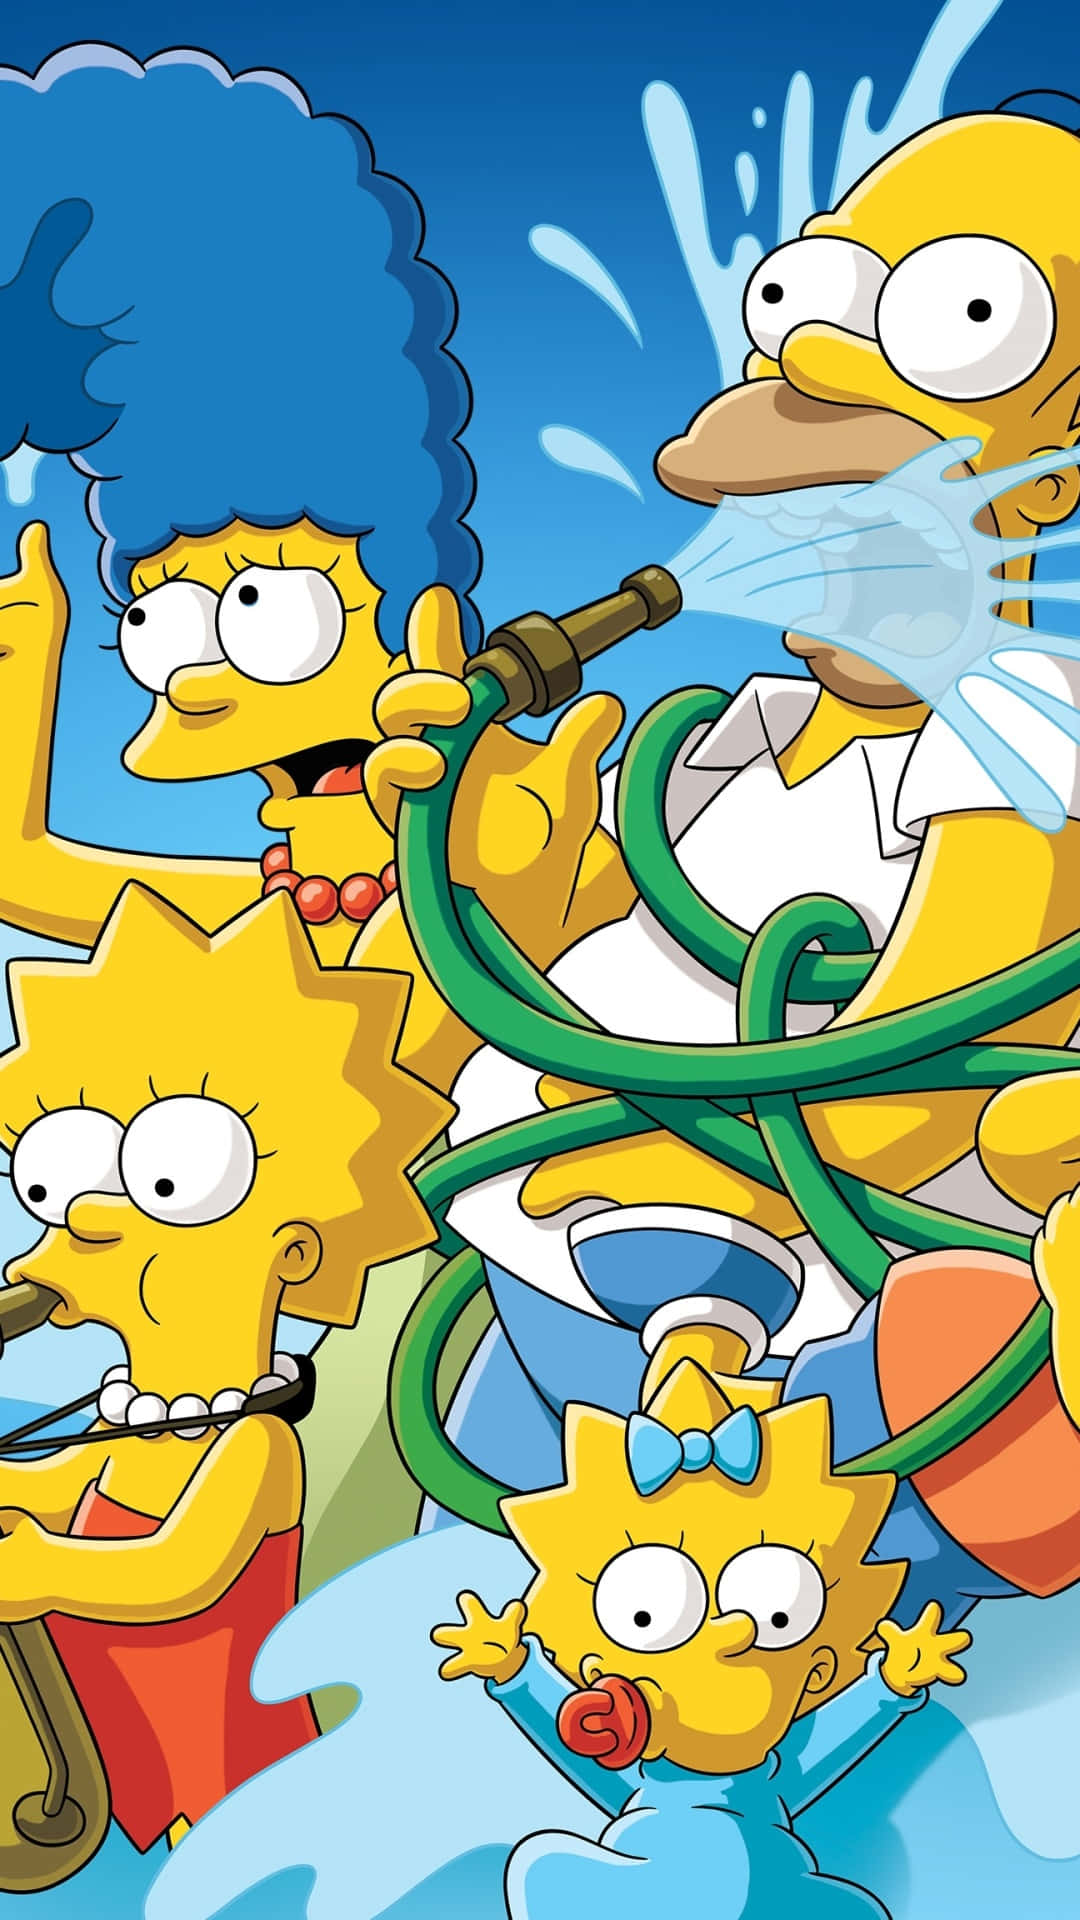 Njutav Bra Tider Med Vänner Och Familj På The Simpsons